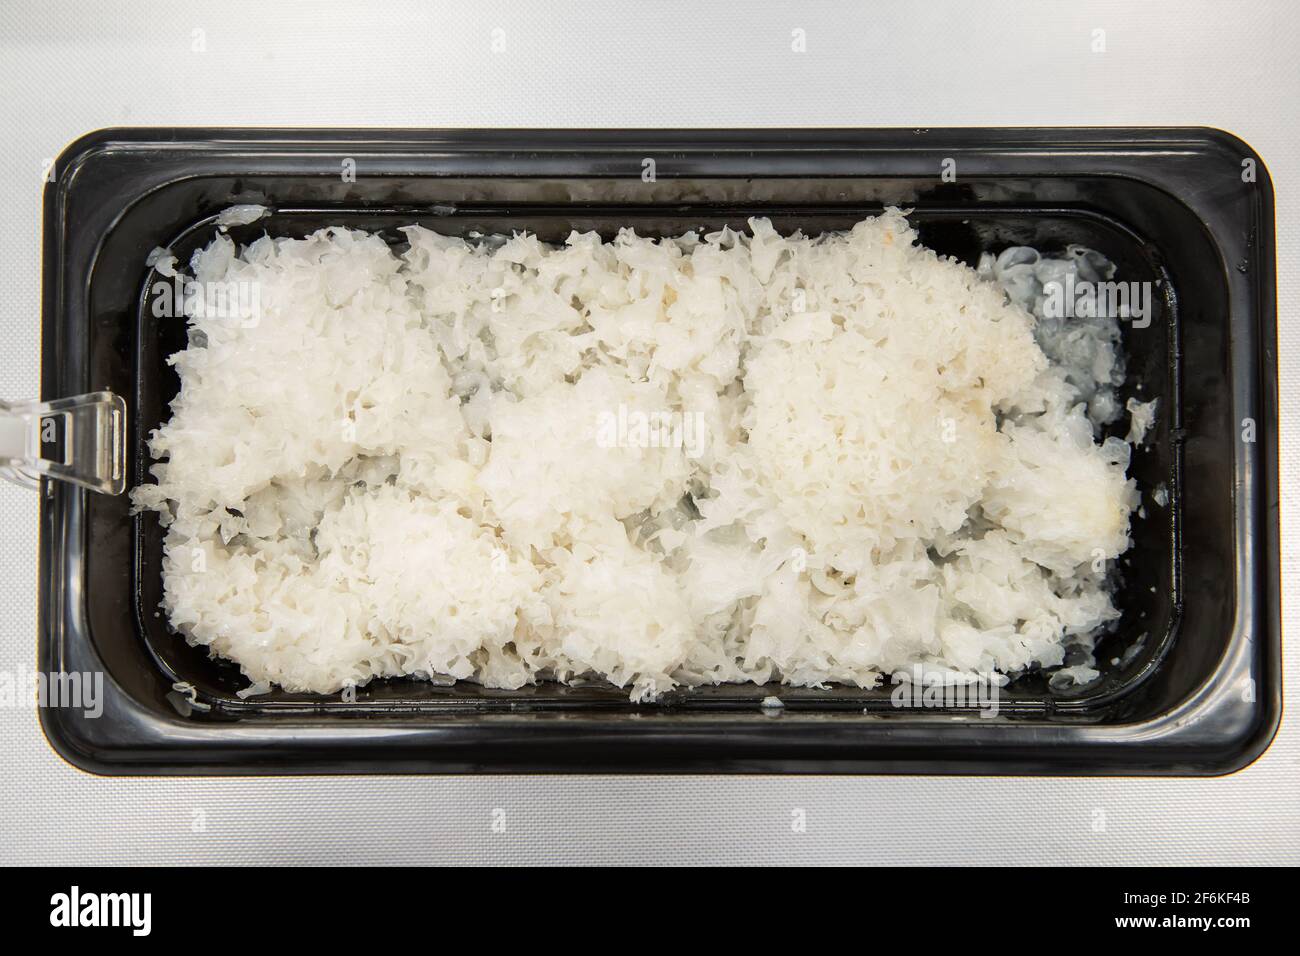 Salade coréenne de champignons des neiges marinés dans un récipient en plastique Banque D'Images